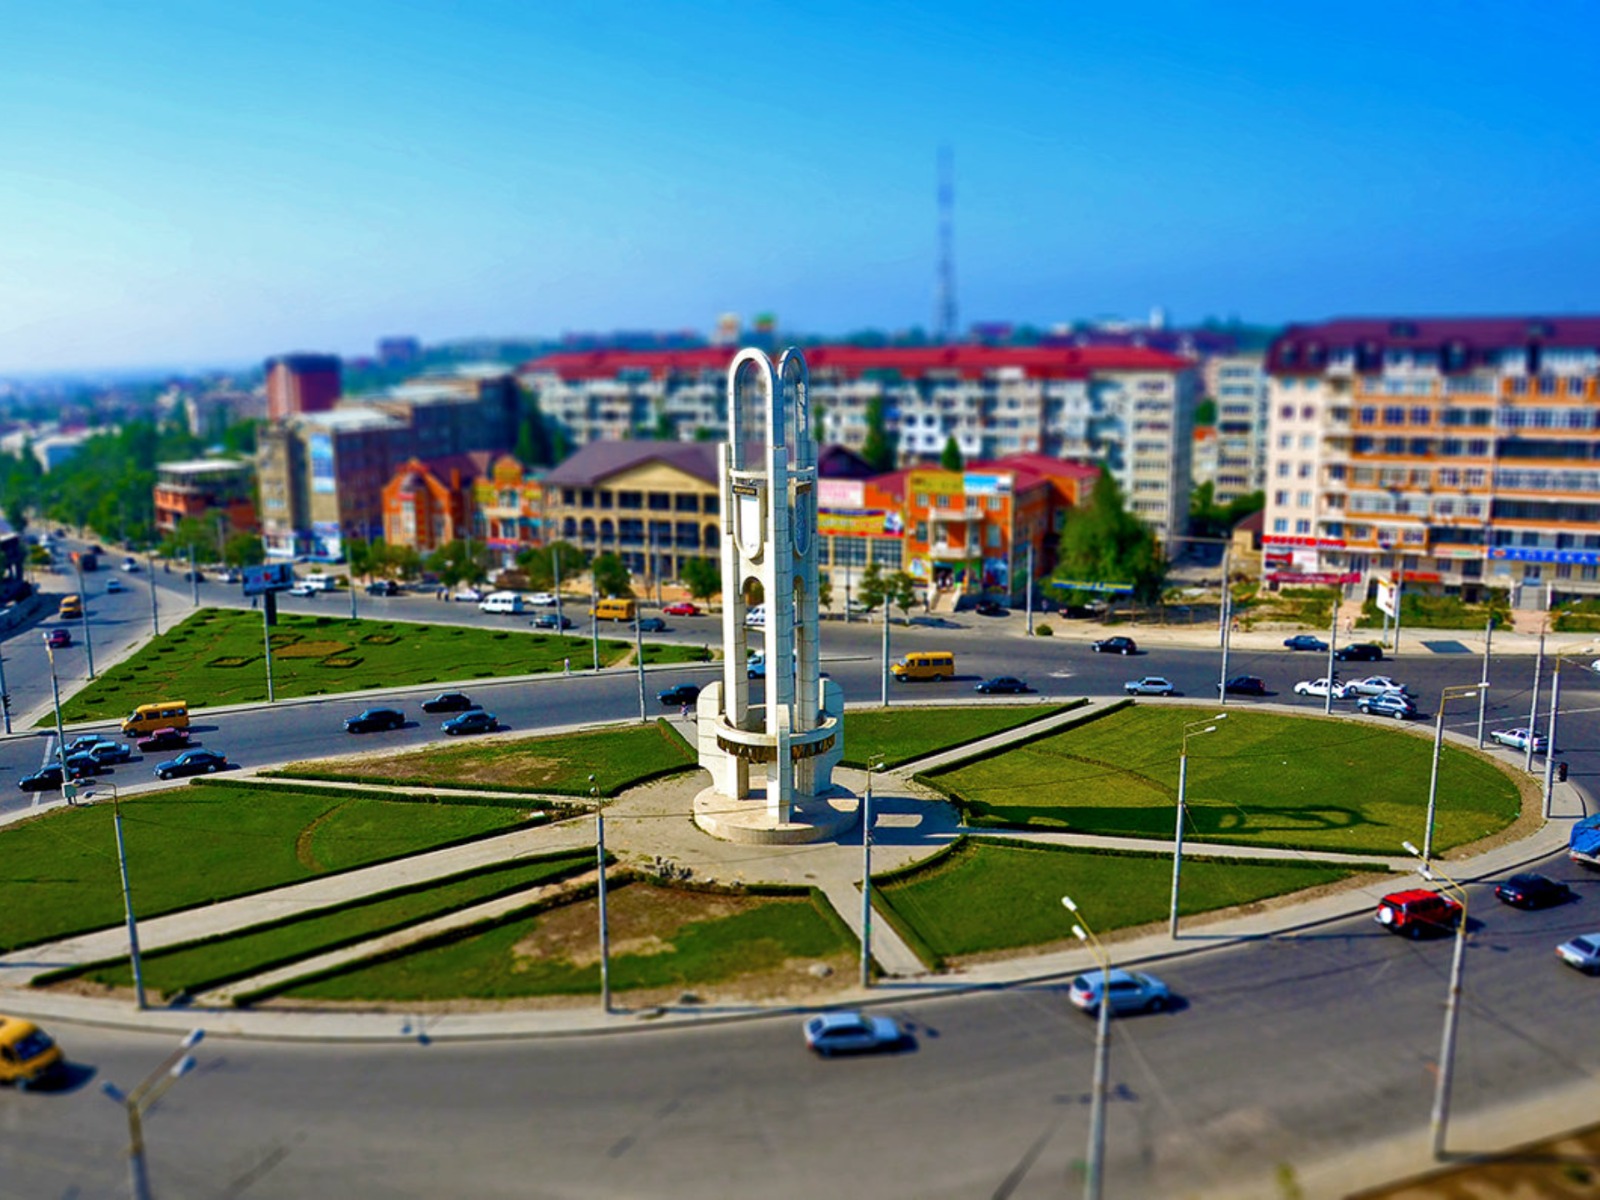 Основание Махачкалы как столицы Республики Дагестан